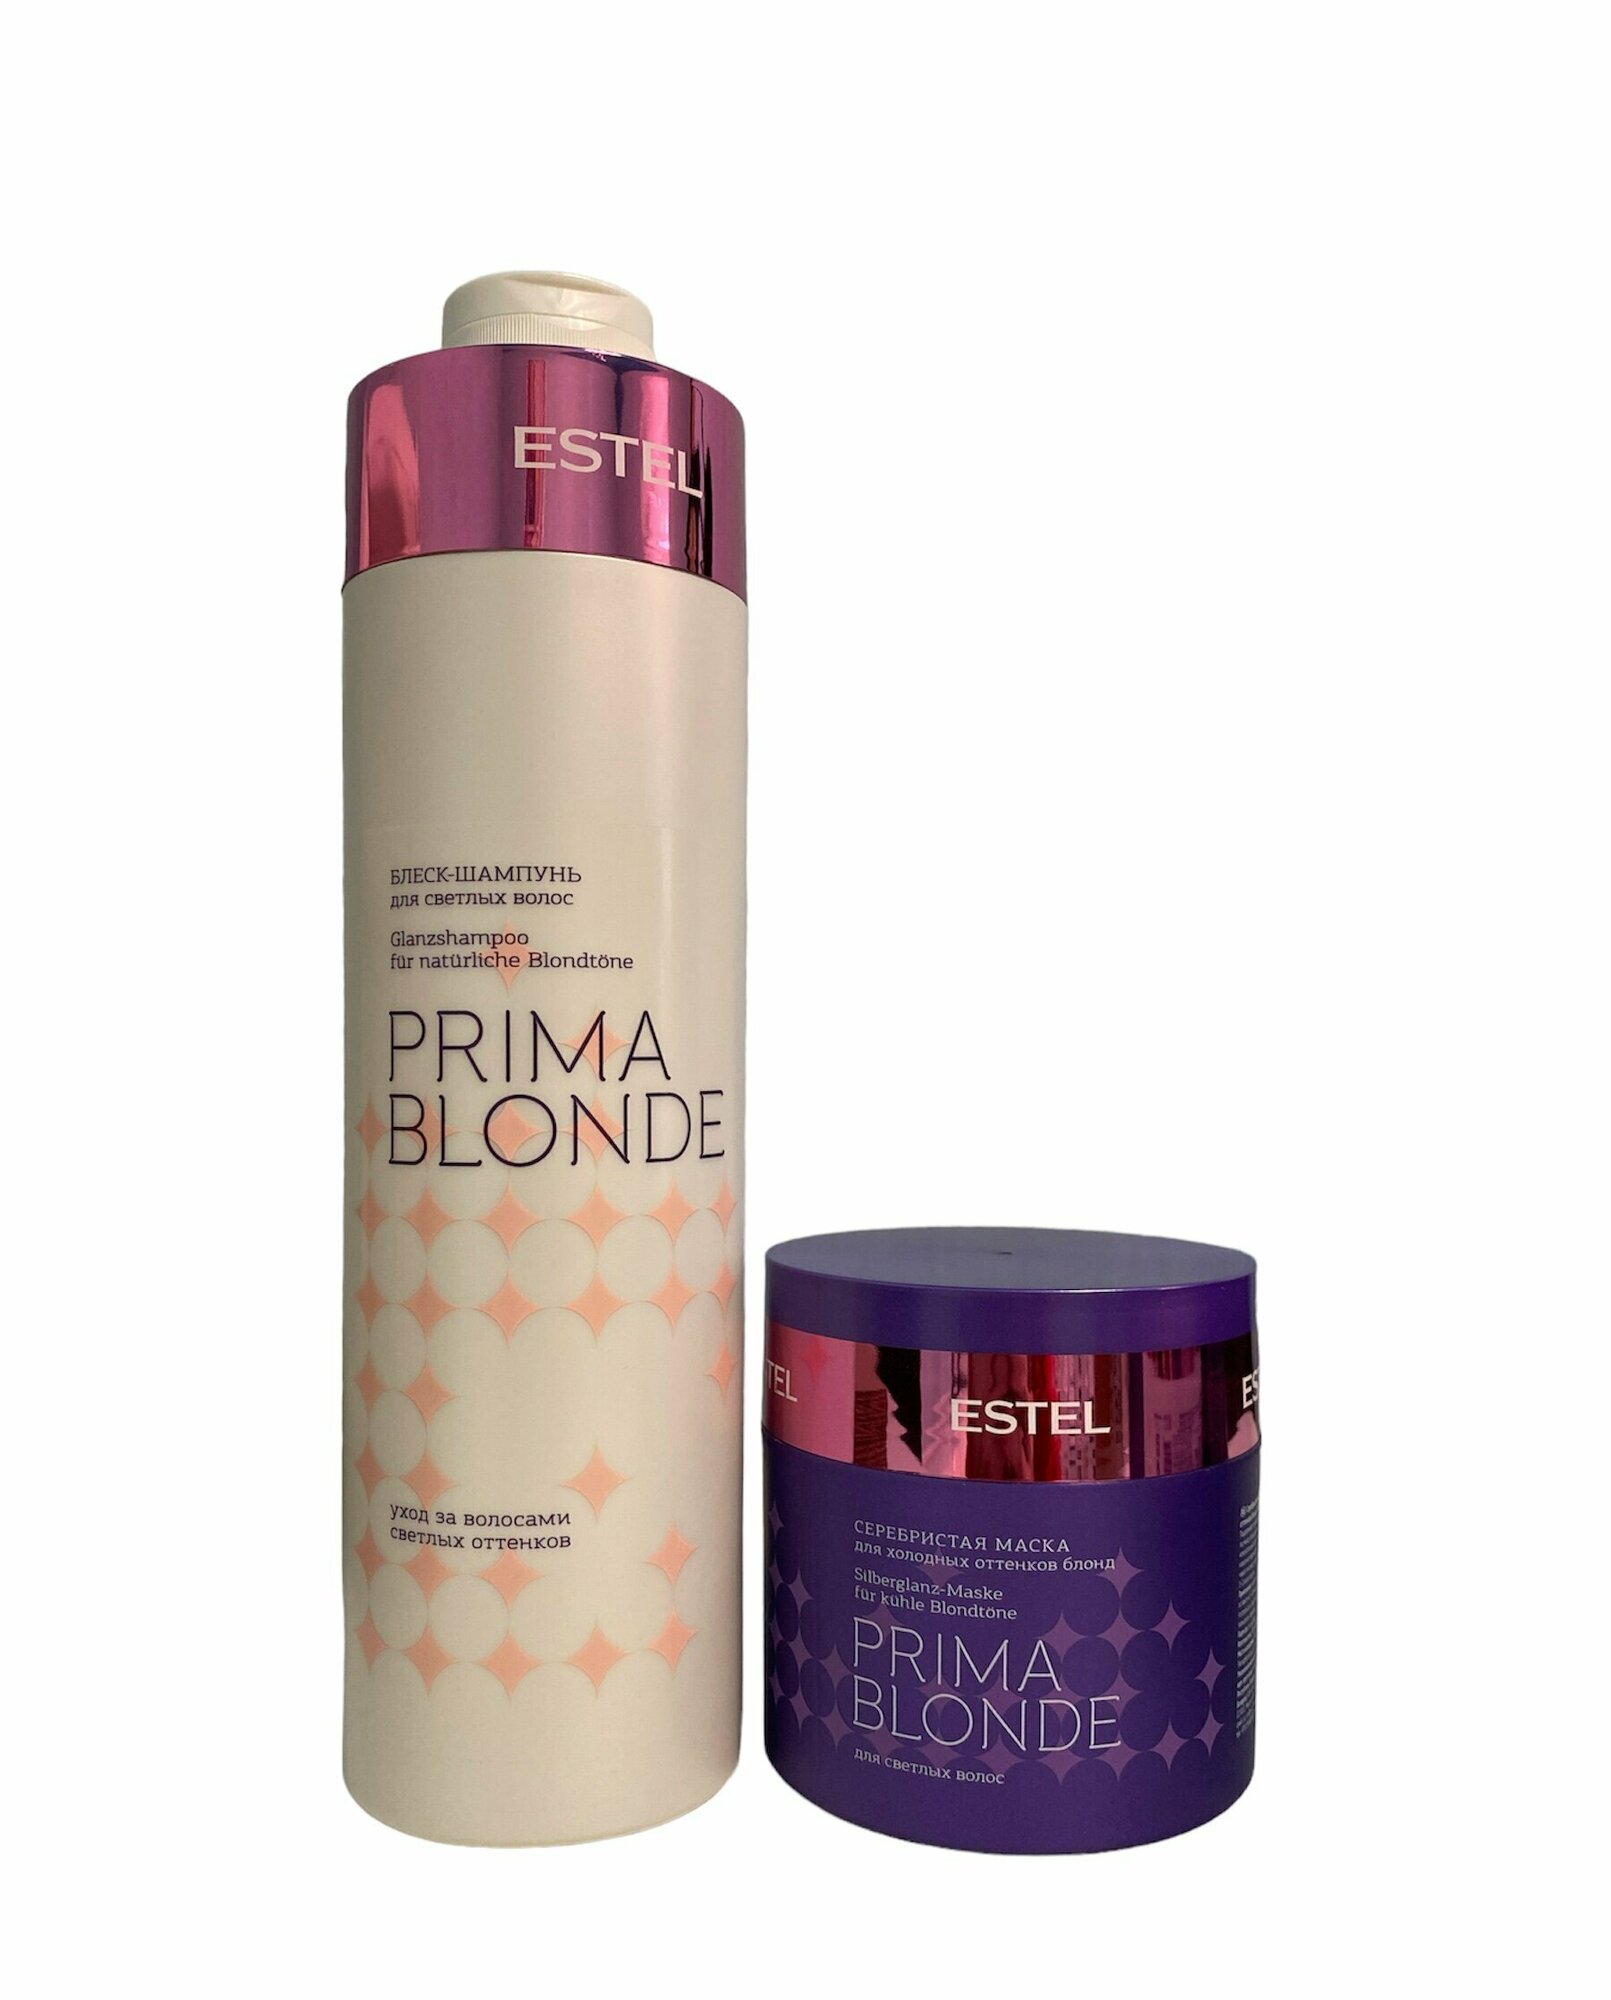 ESTEL PRIMA BLONDE шампунь-блеск для светлых волос 1000 мл + серебристая маска для холодных оттенков блонд 300 мл